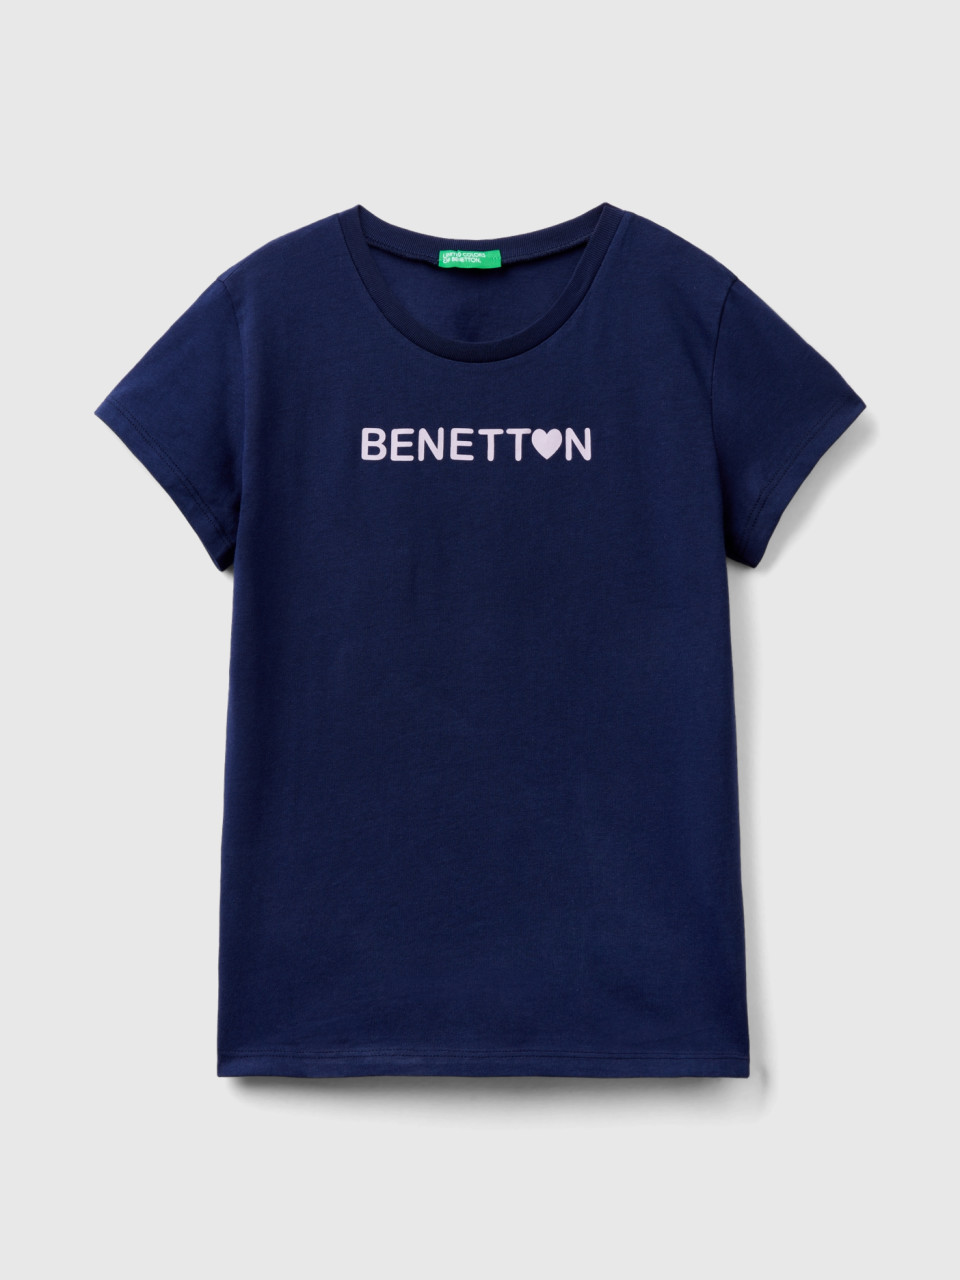 Benetton, T-shirt Mit Logo 100% Baumwolle, Dunkelblau, female